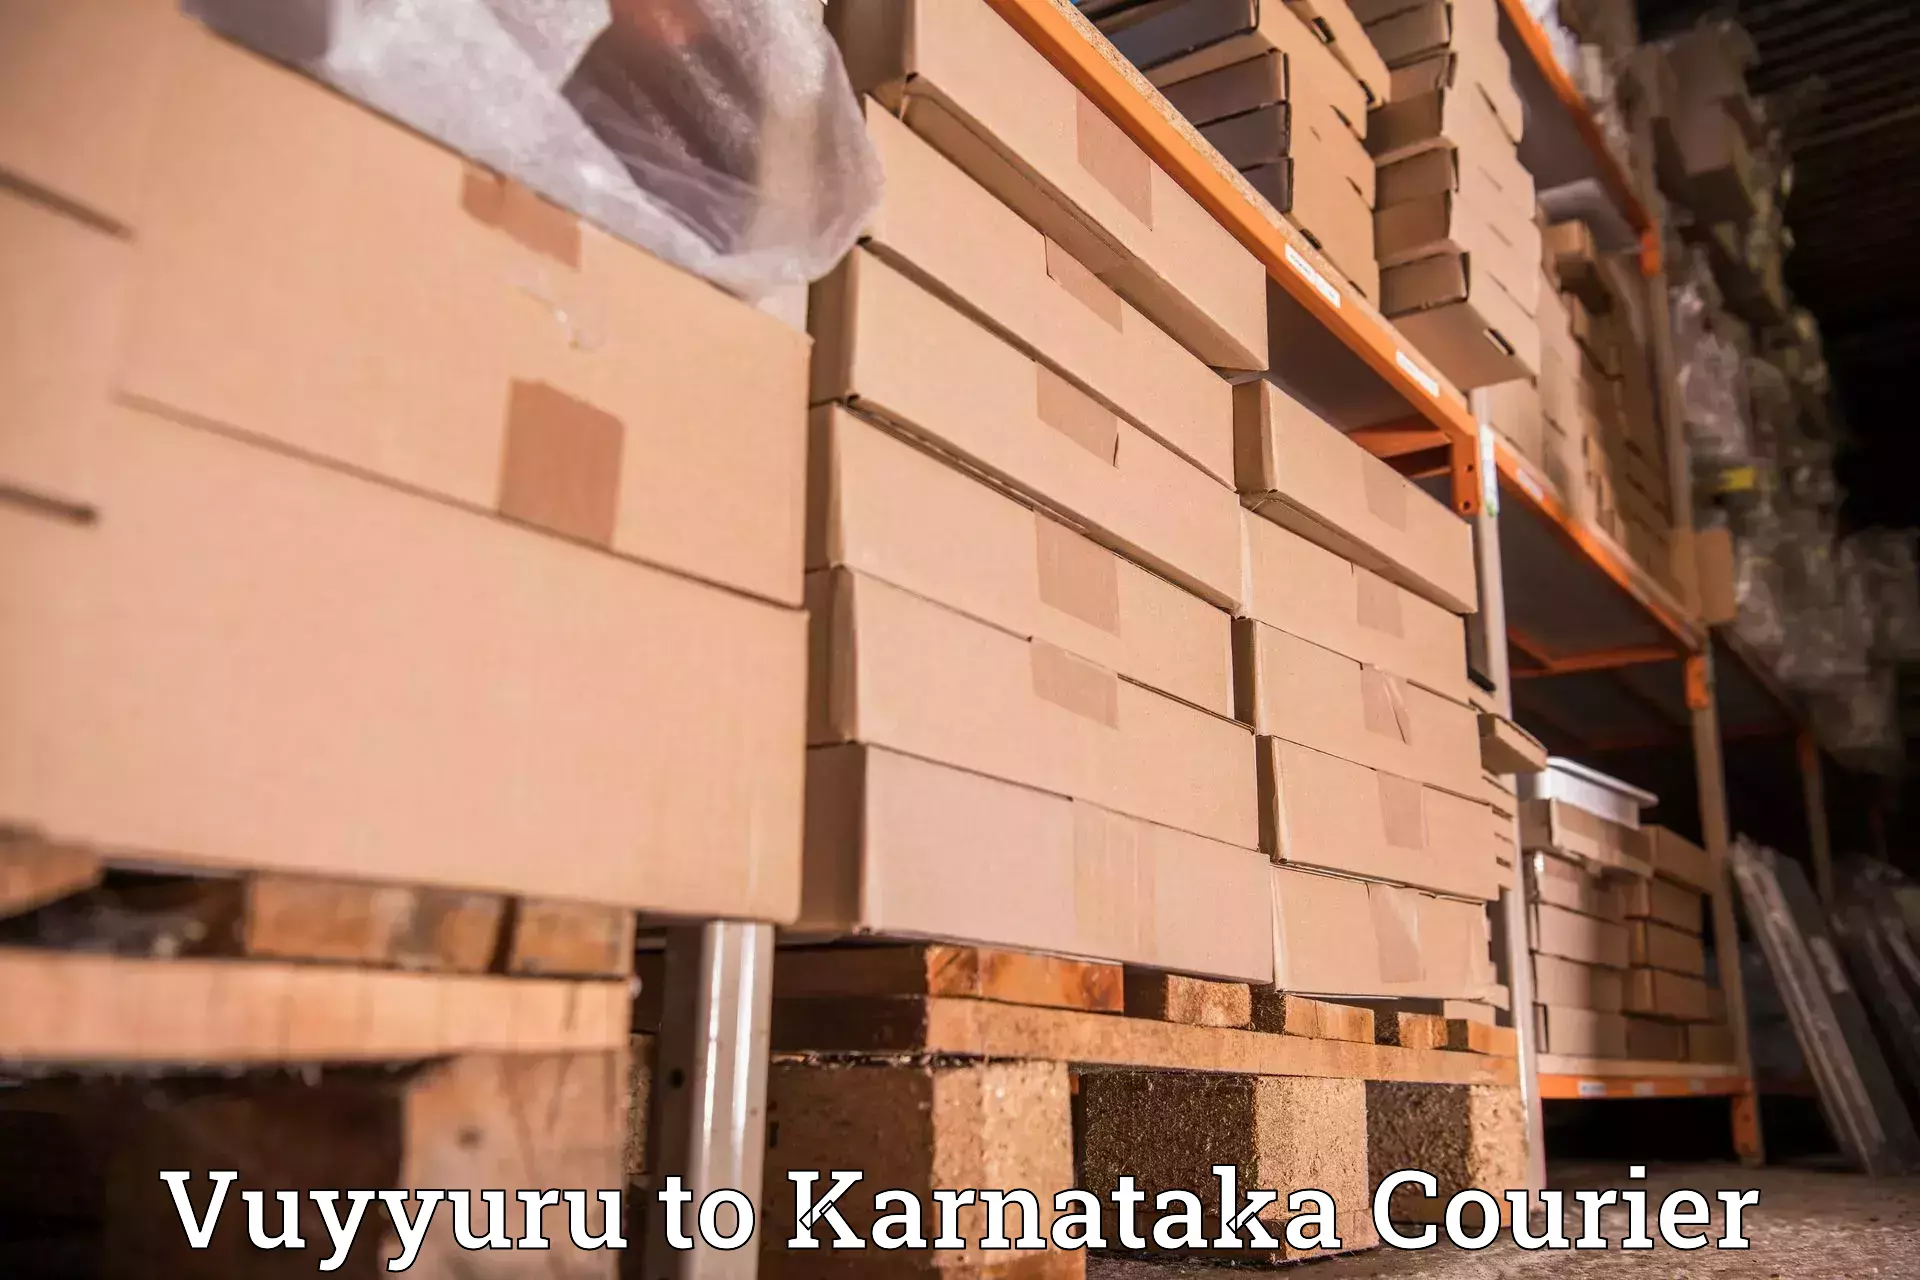 Efficient cargo handling in Vuyyuru to Manipal